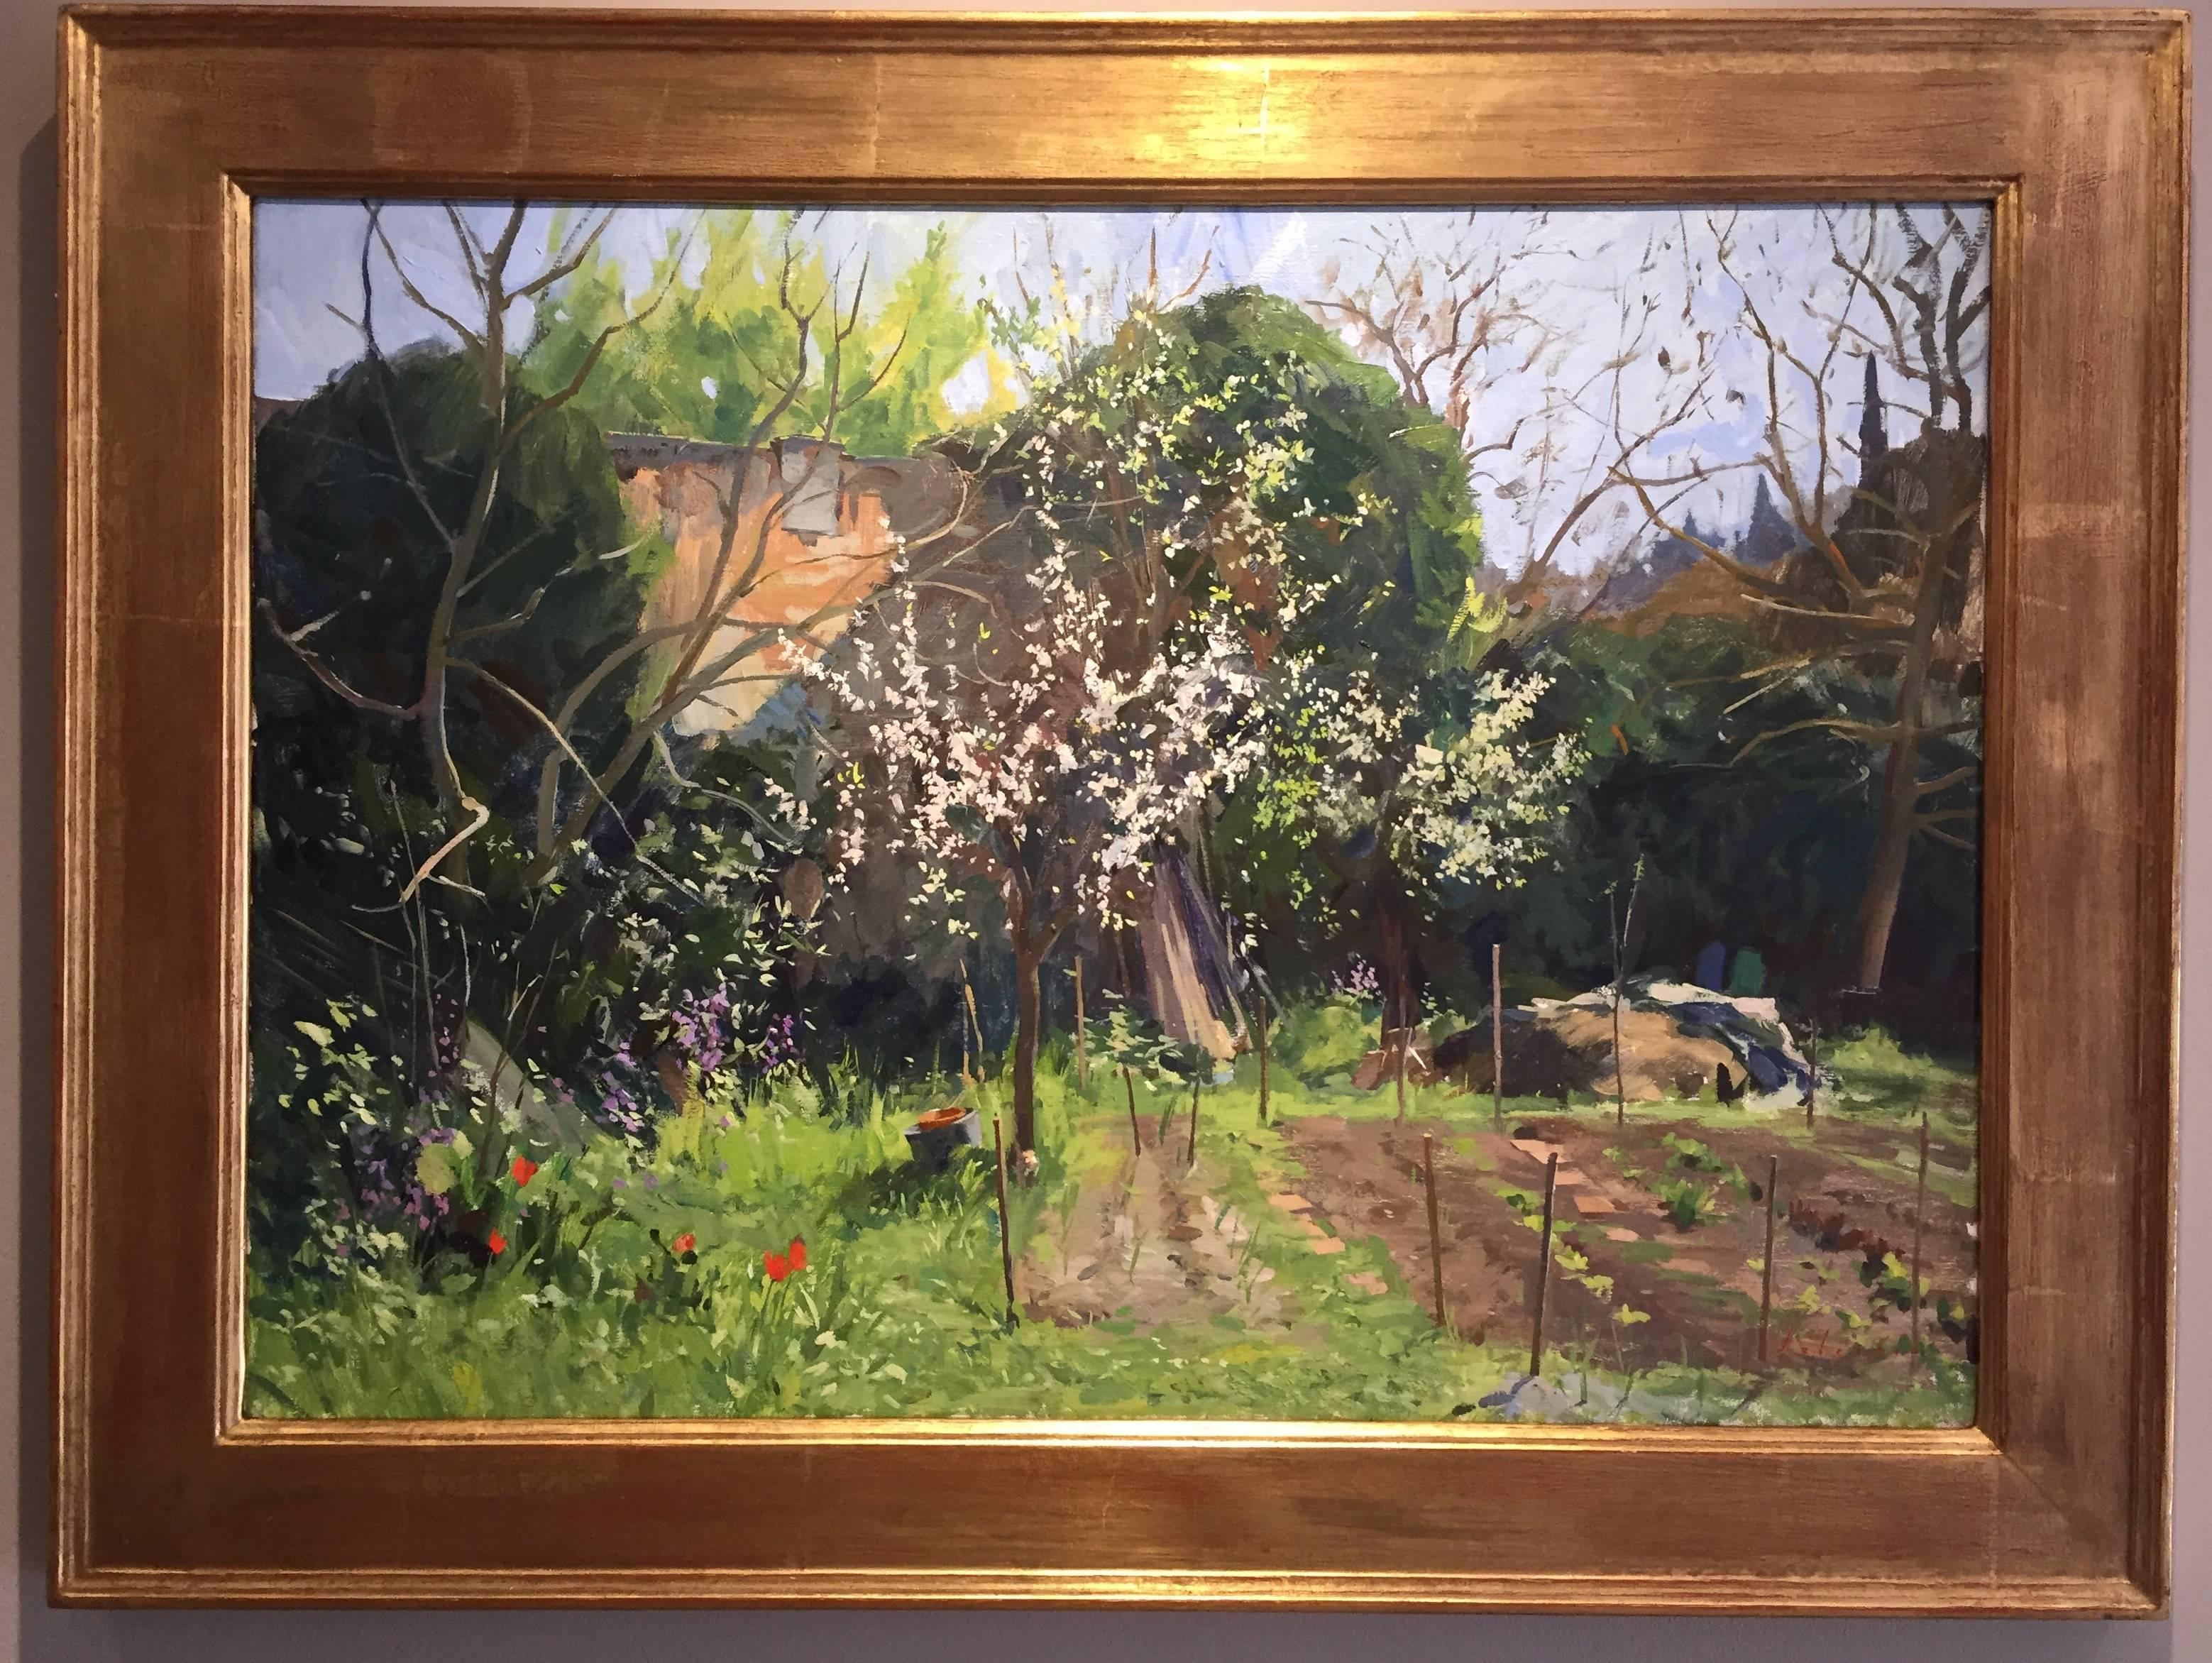 Frühling im Garten – Painting von Marc Dalessio